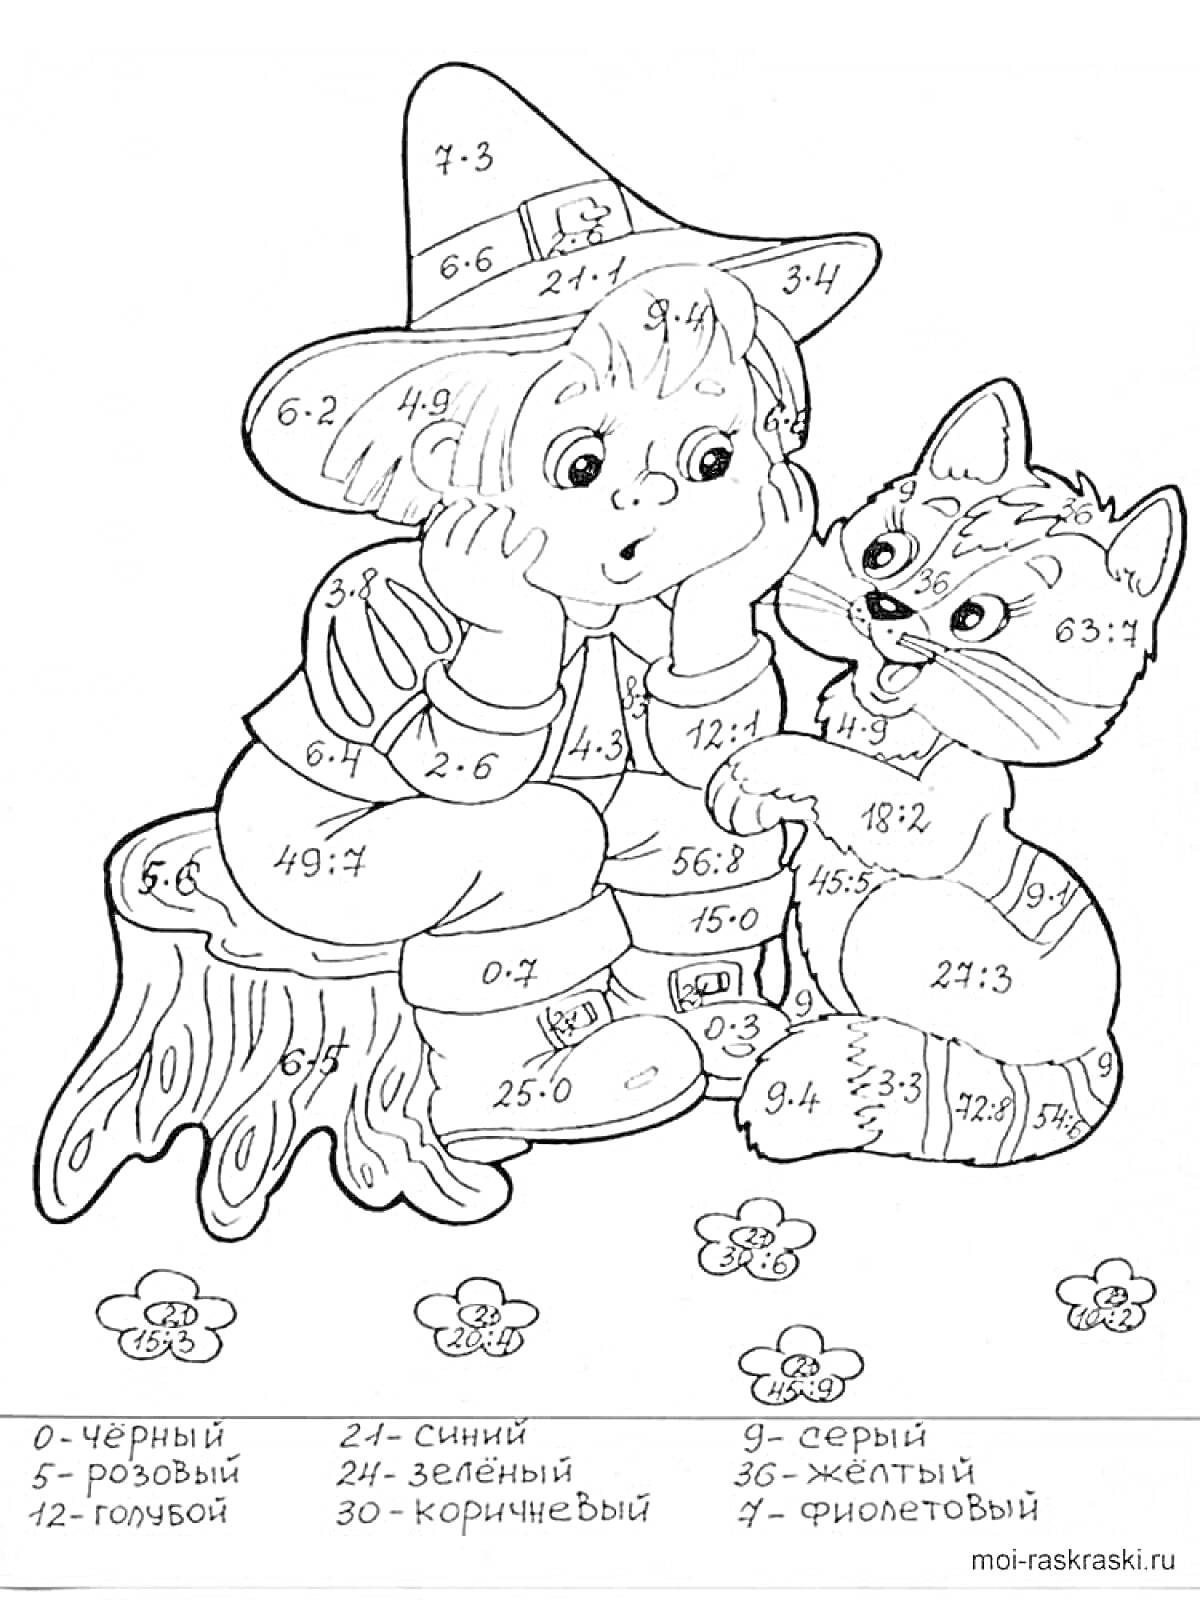 Раскраска Раскраска с мальчиком в шляпе и котенком, система раскрашивания по номерам